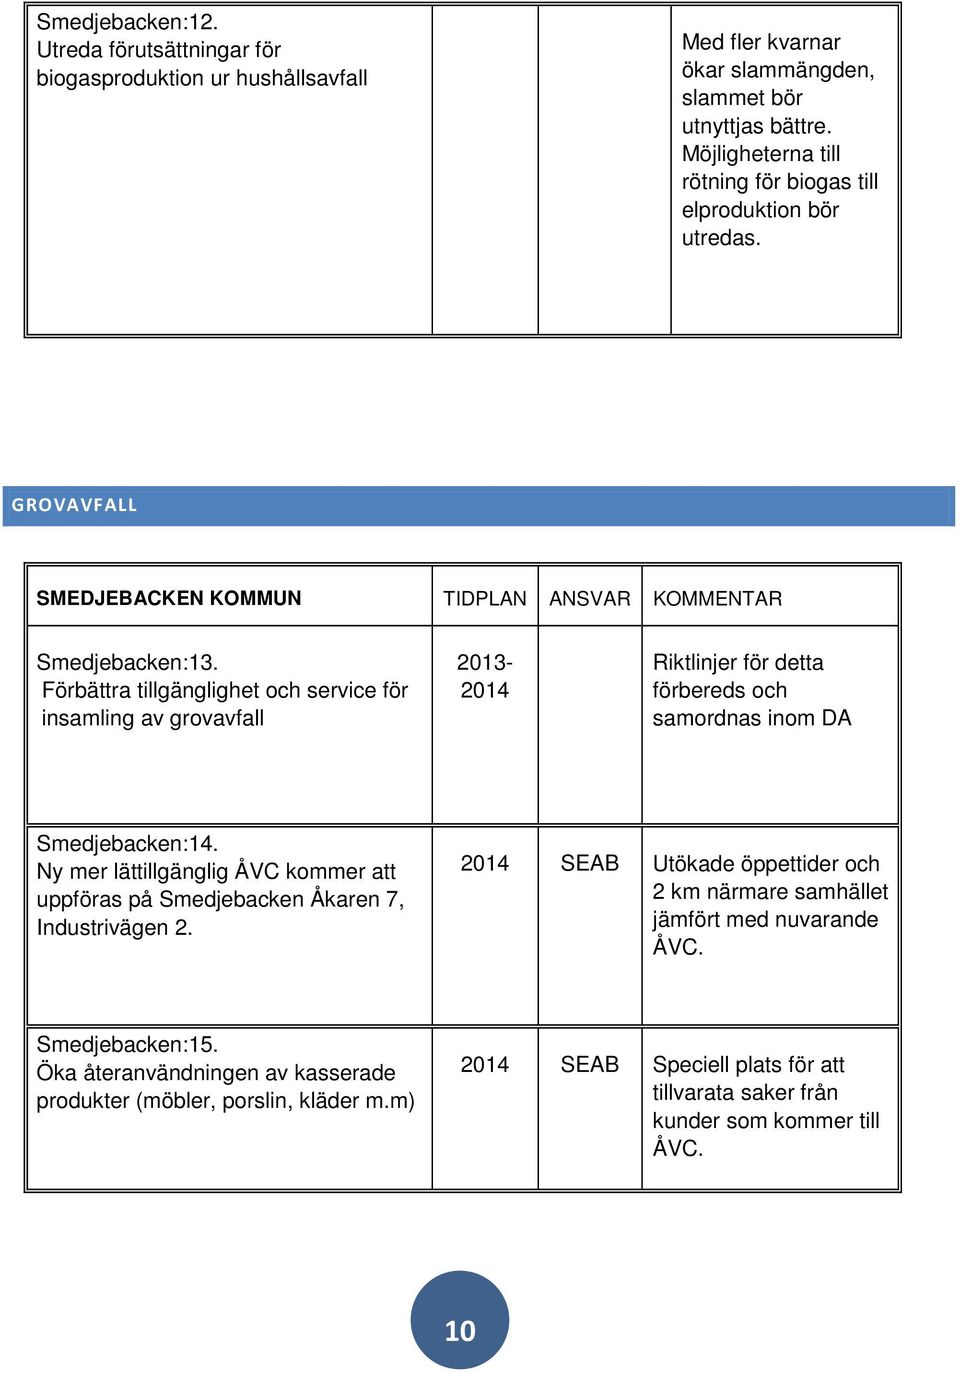 Förbättra tillgänglighet och service för insamling av grovavfall 2013-2014 Riktlinjer för detta förbereds och samordnas inom DA Smedjebacken:14.